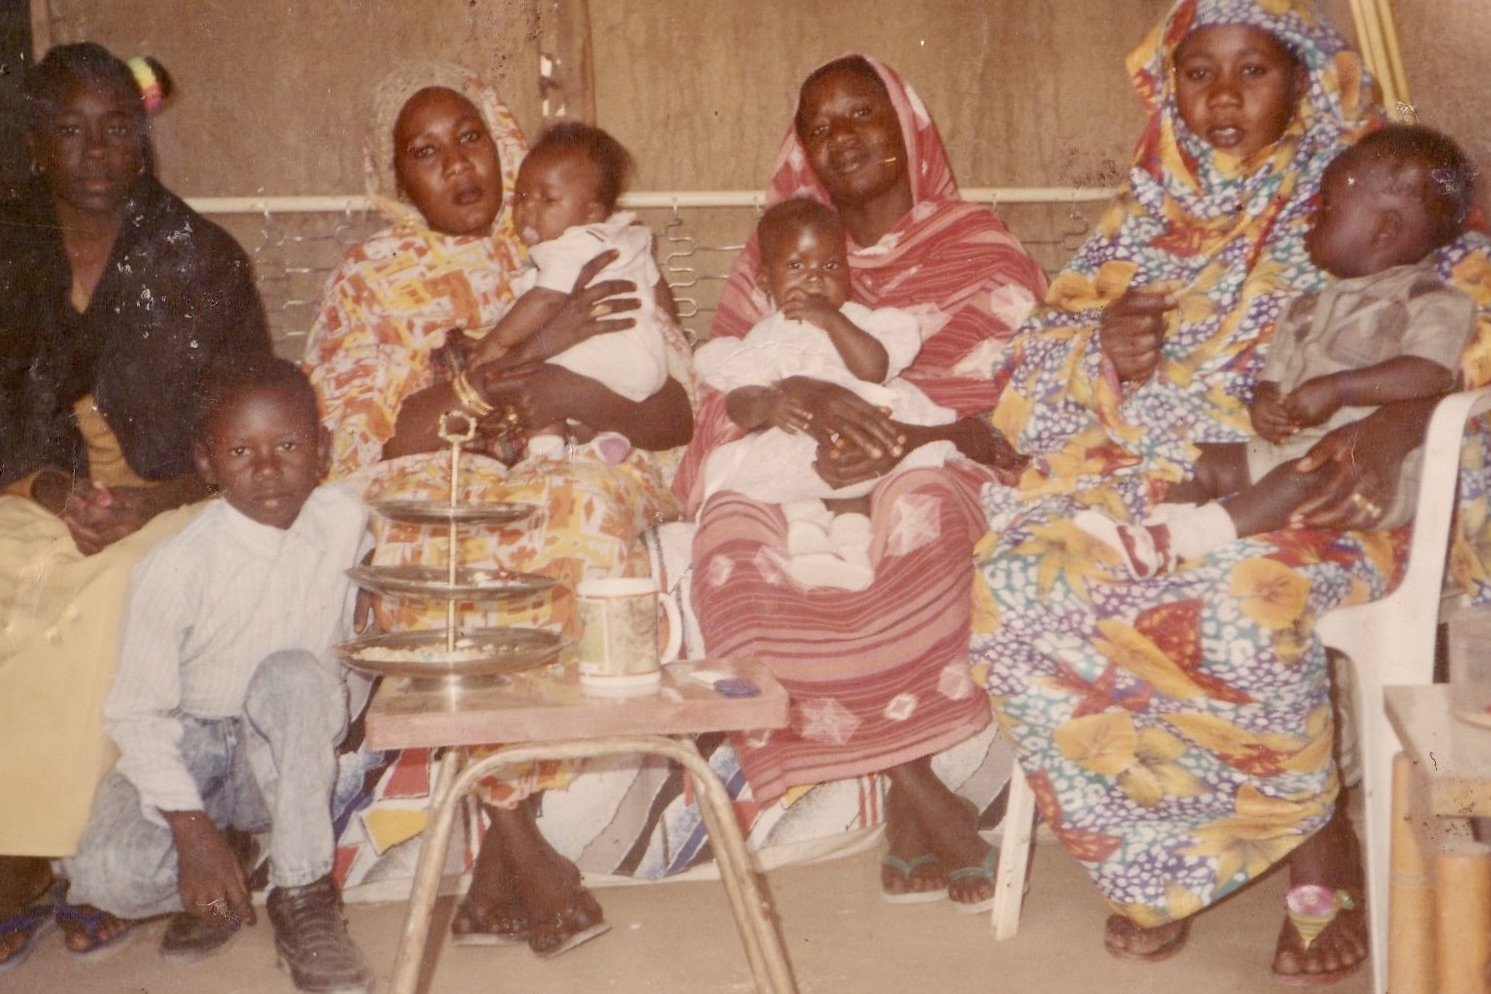 Celebrating Eid with Ekhlas Ahmed’s aunties and cousins, Khartoum, Sudan, 1993 